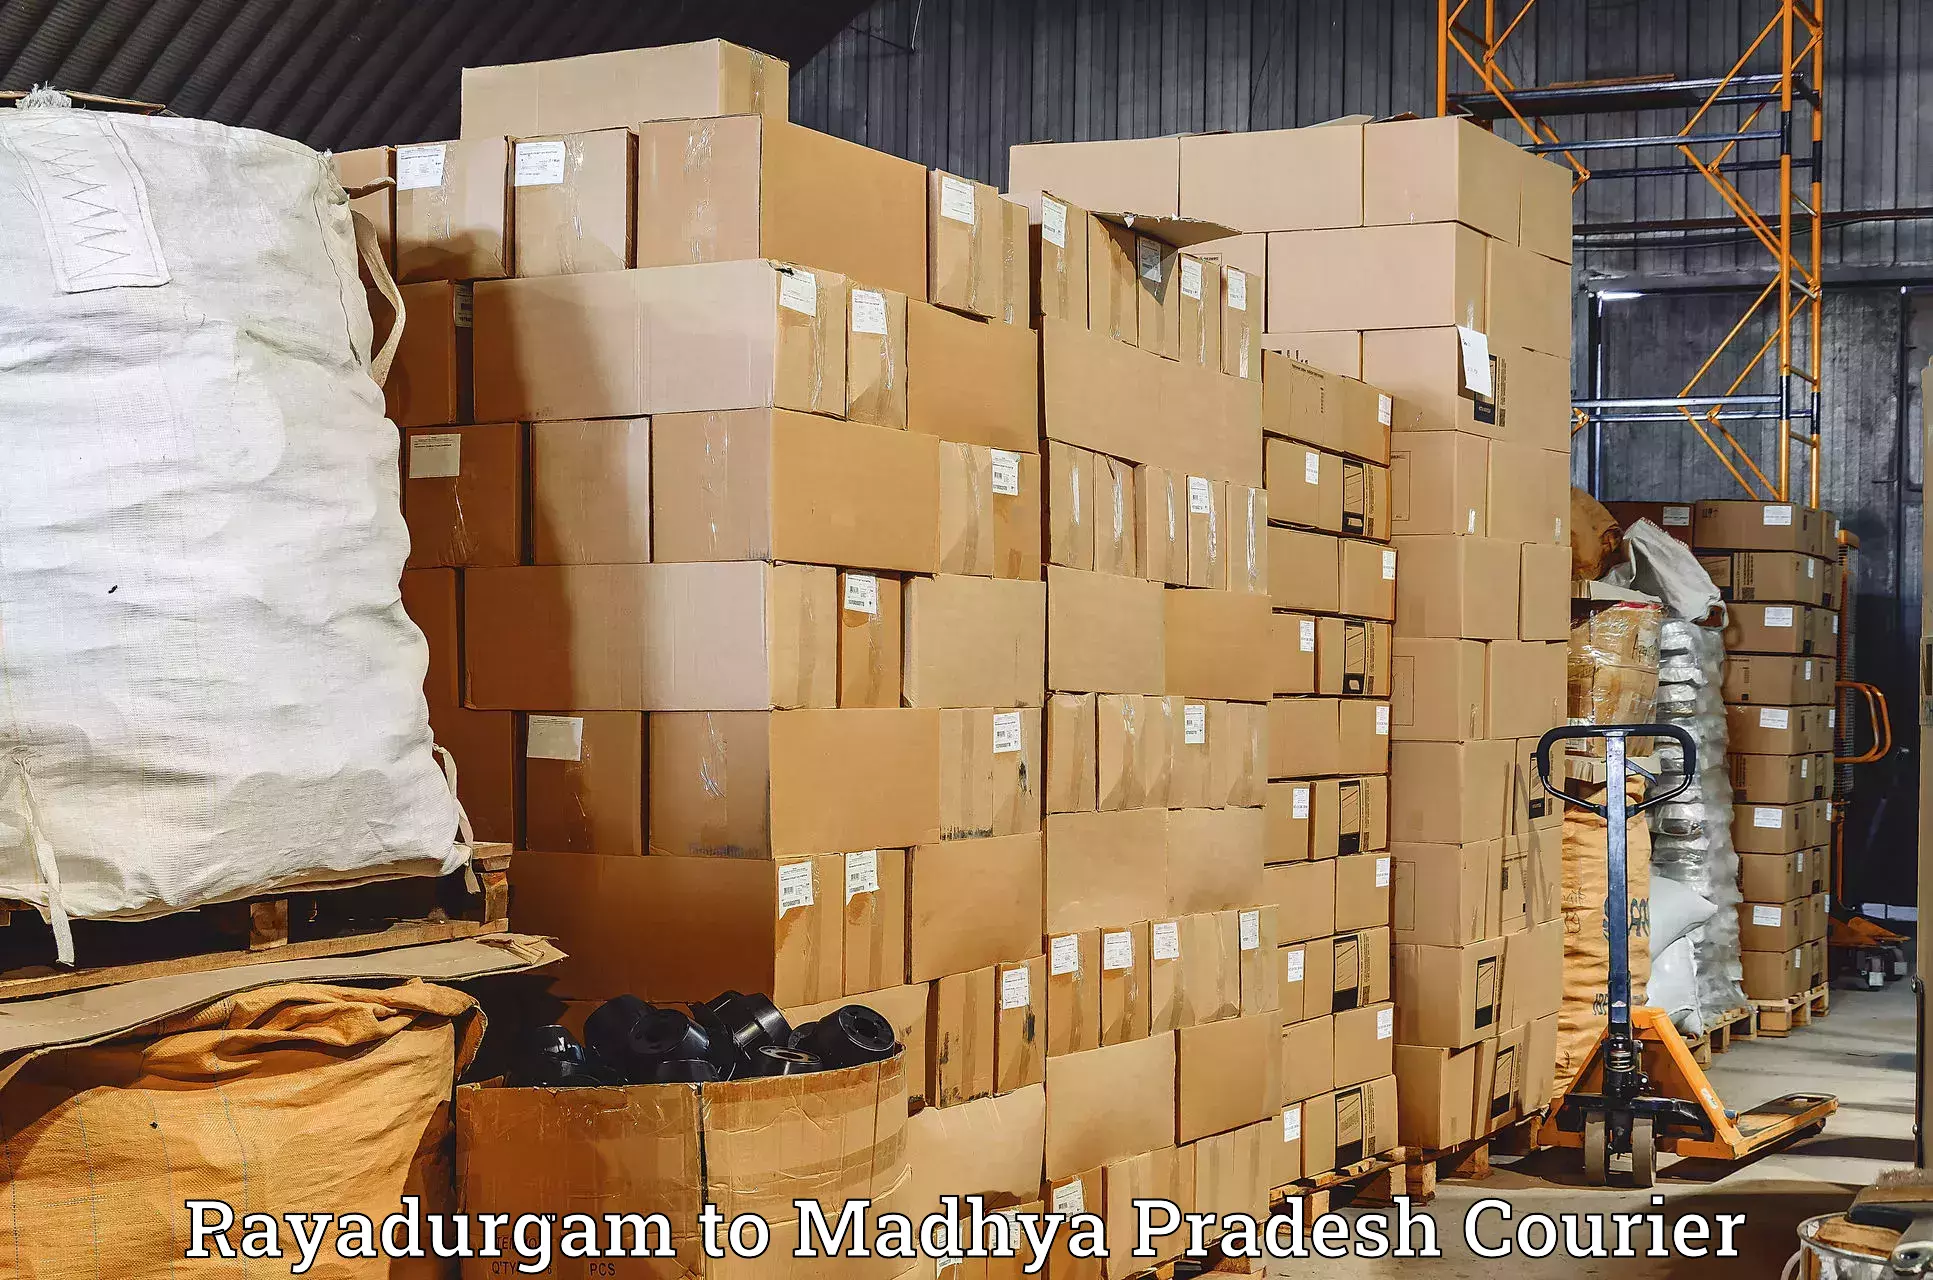 Global shipping networks Rayadurgam to Rampur Baghelan